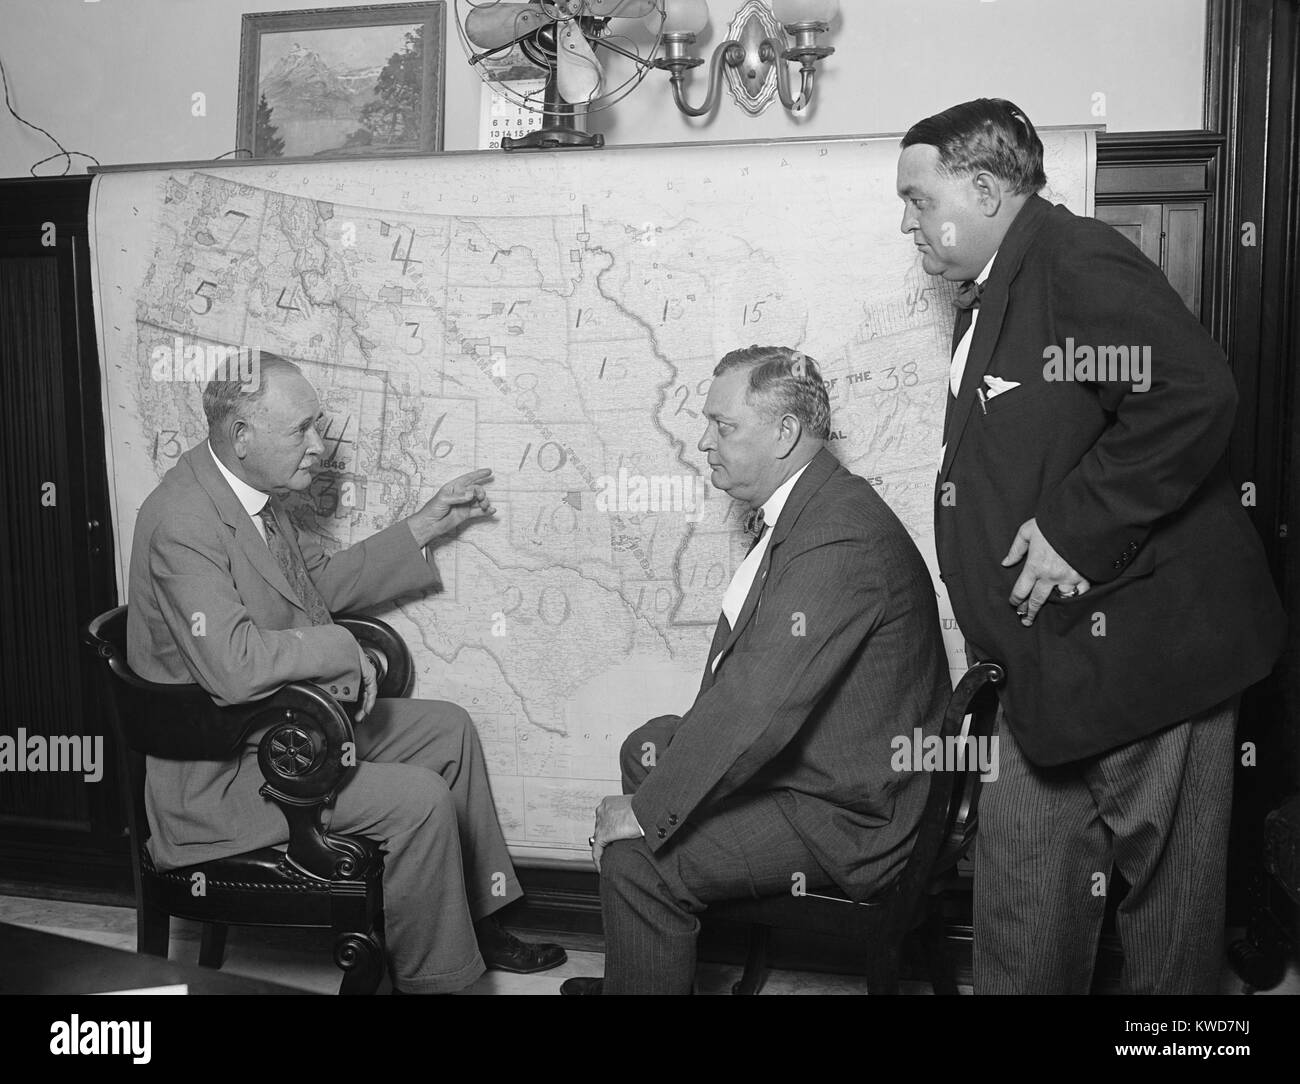 1924 democratica campagna senatoriale Comitato a una mappa. In Coolidge frana, i Democratici perso quattro seggi in Senato, e rimase il partito della minoranza con 41 posti a sedere per il 54 dei democratici. (BSLOC_2015_16_113) Foto Stock